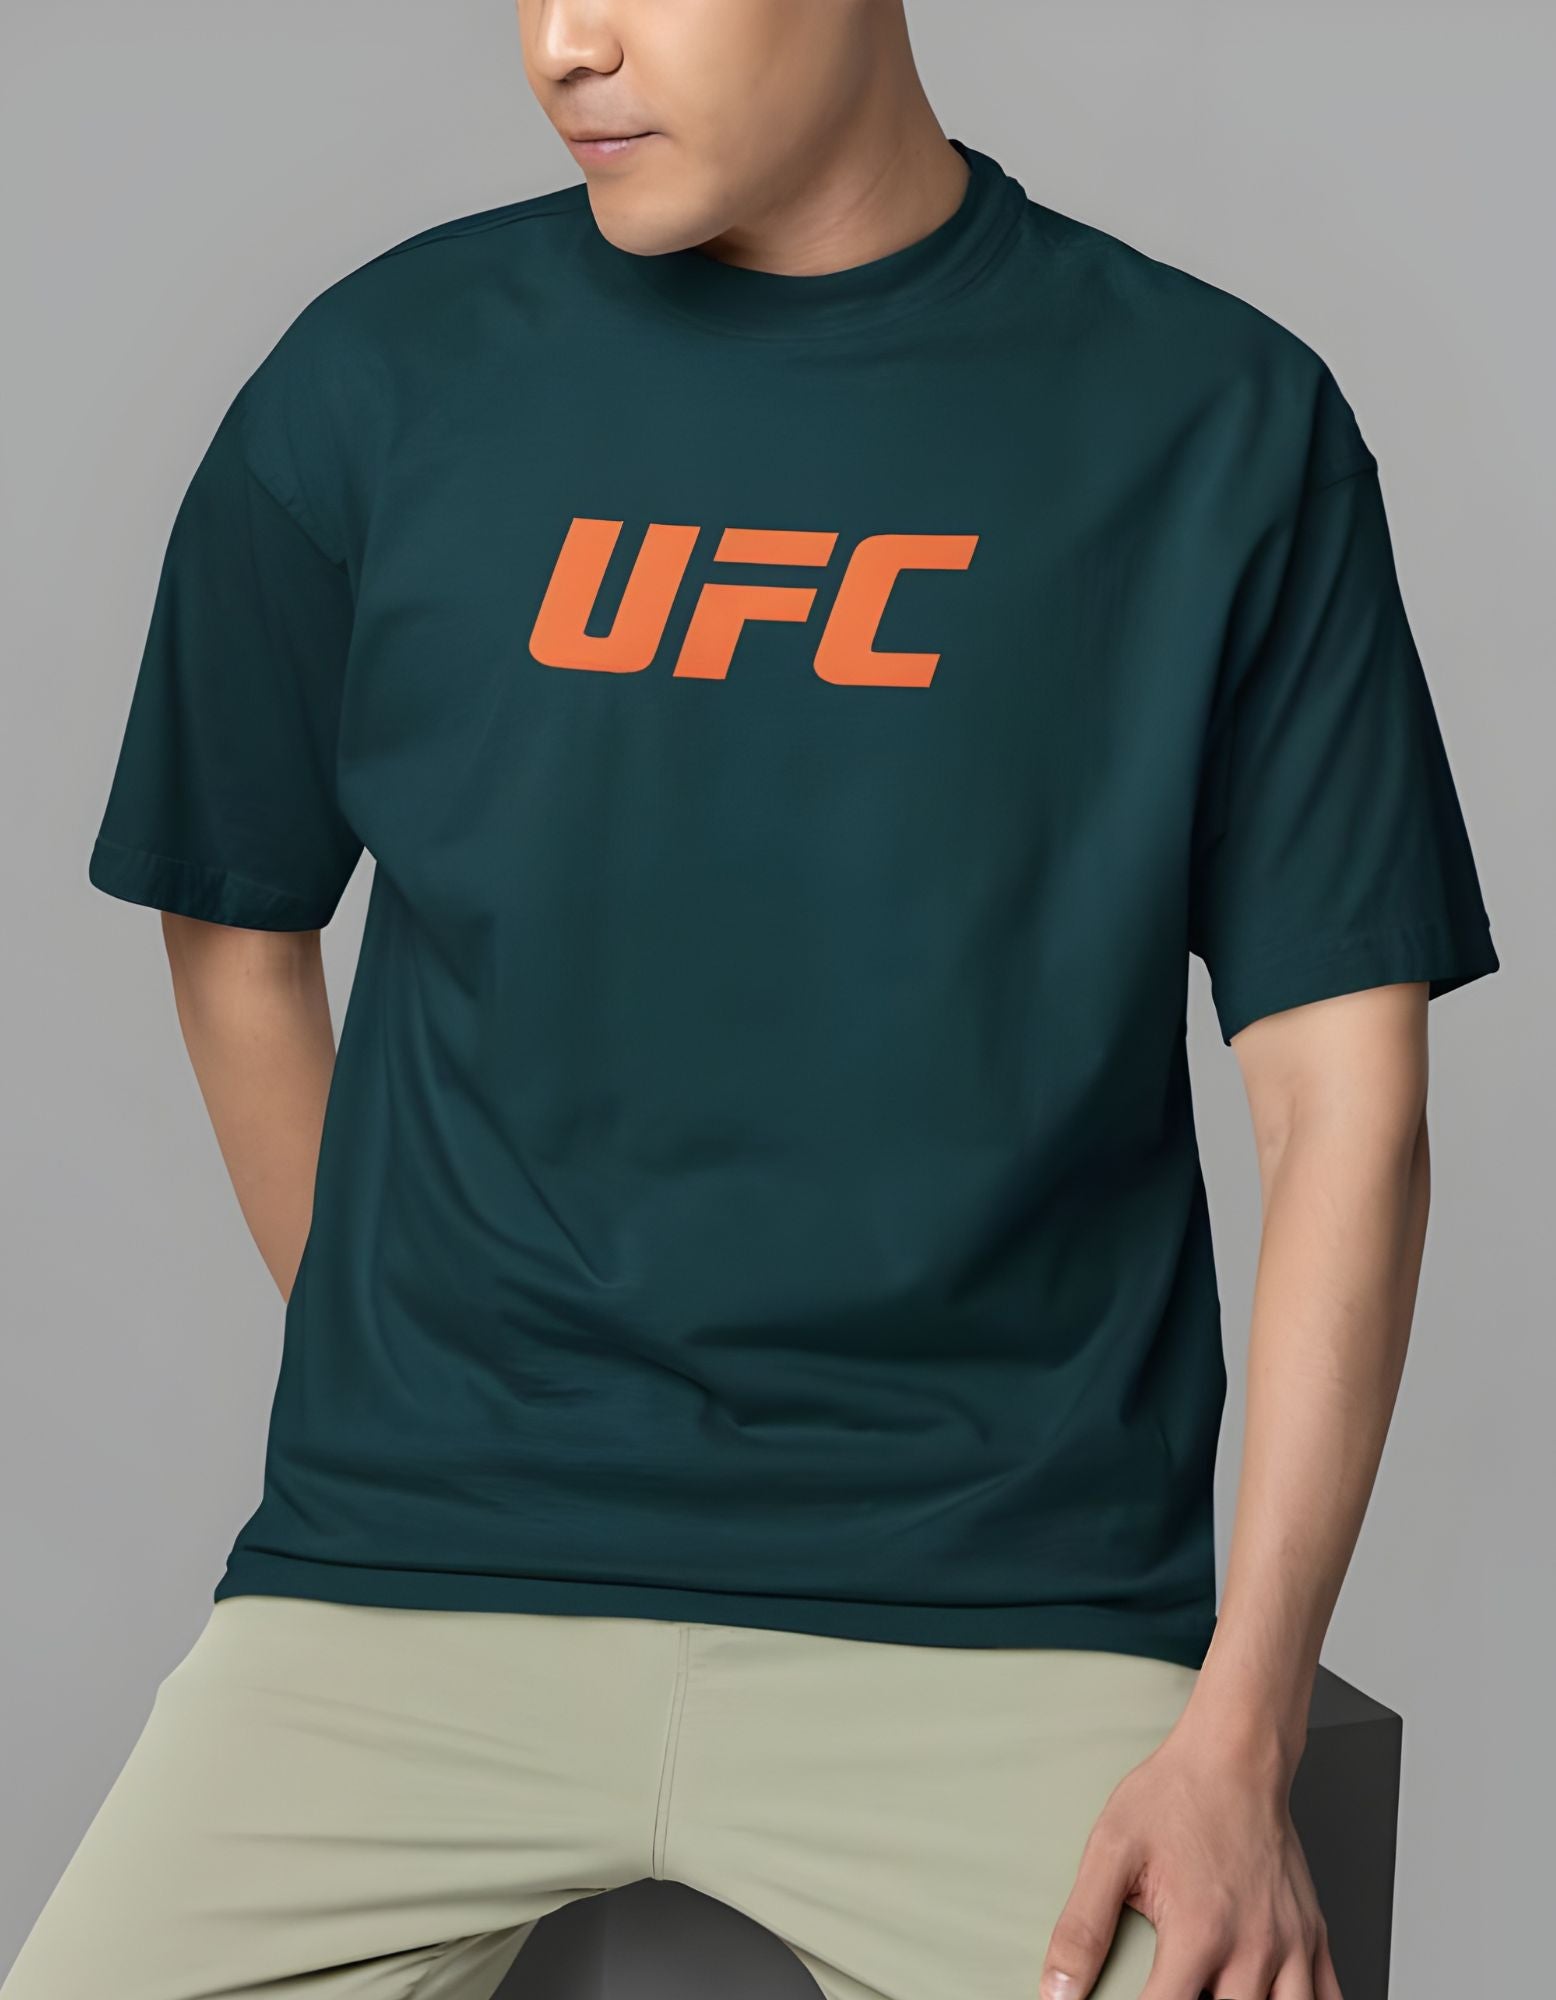 UFC Oversized T-shirt for Men